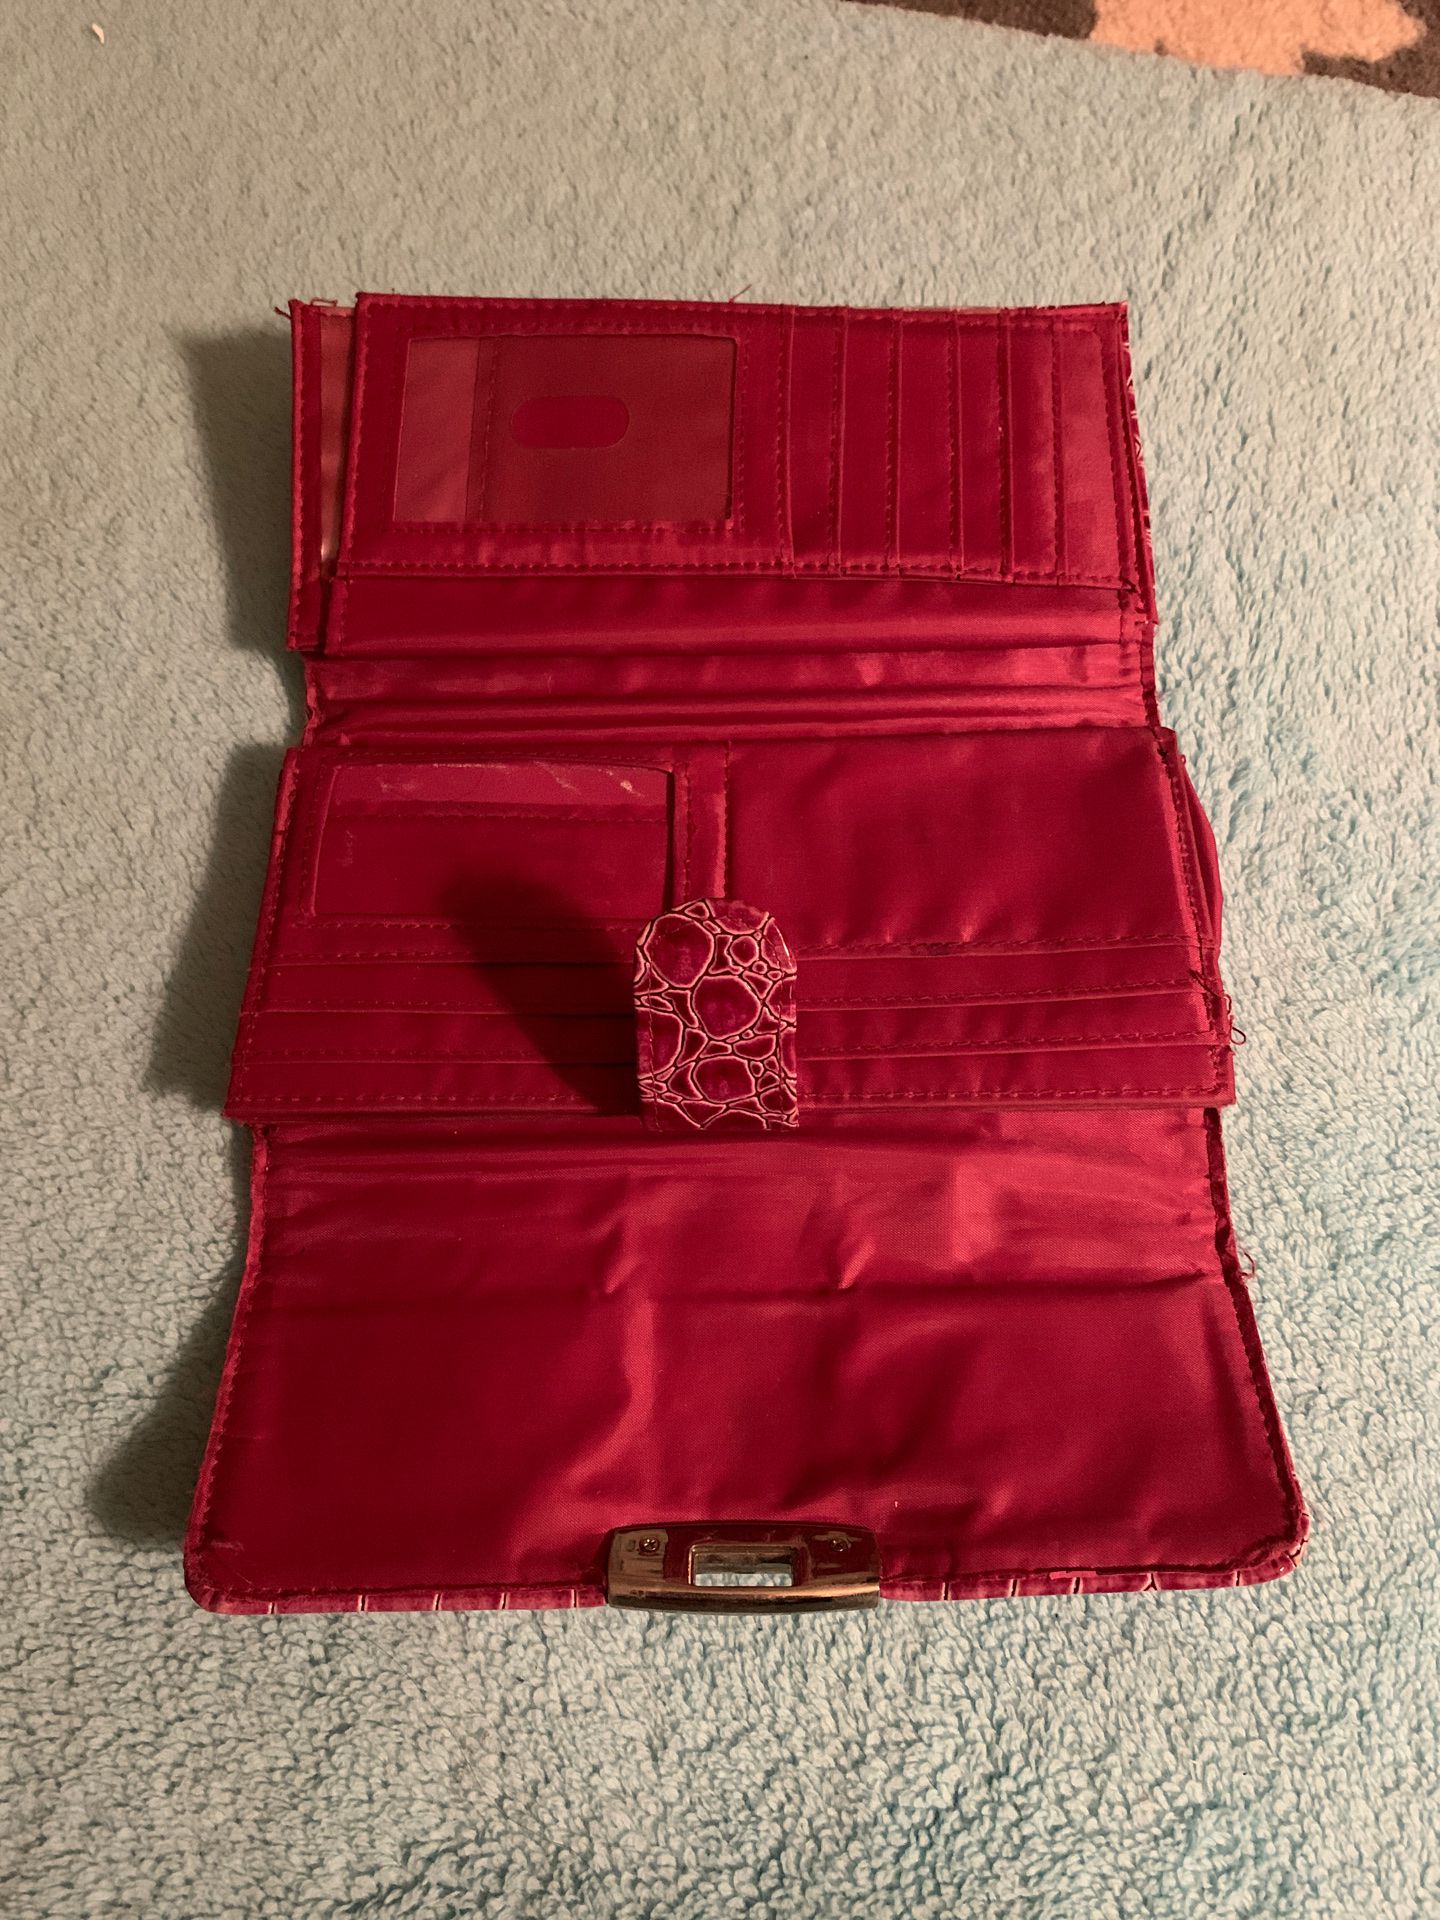 RGA accessories pink wallet